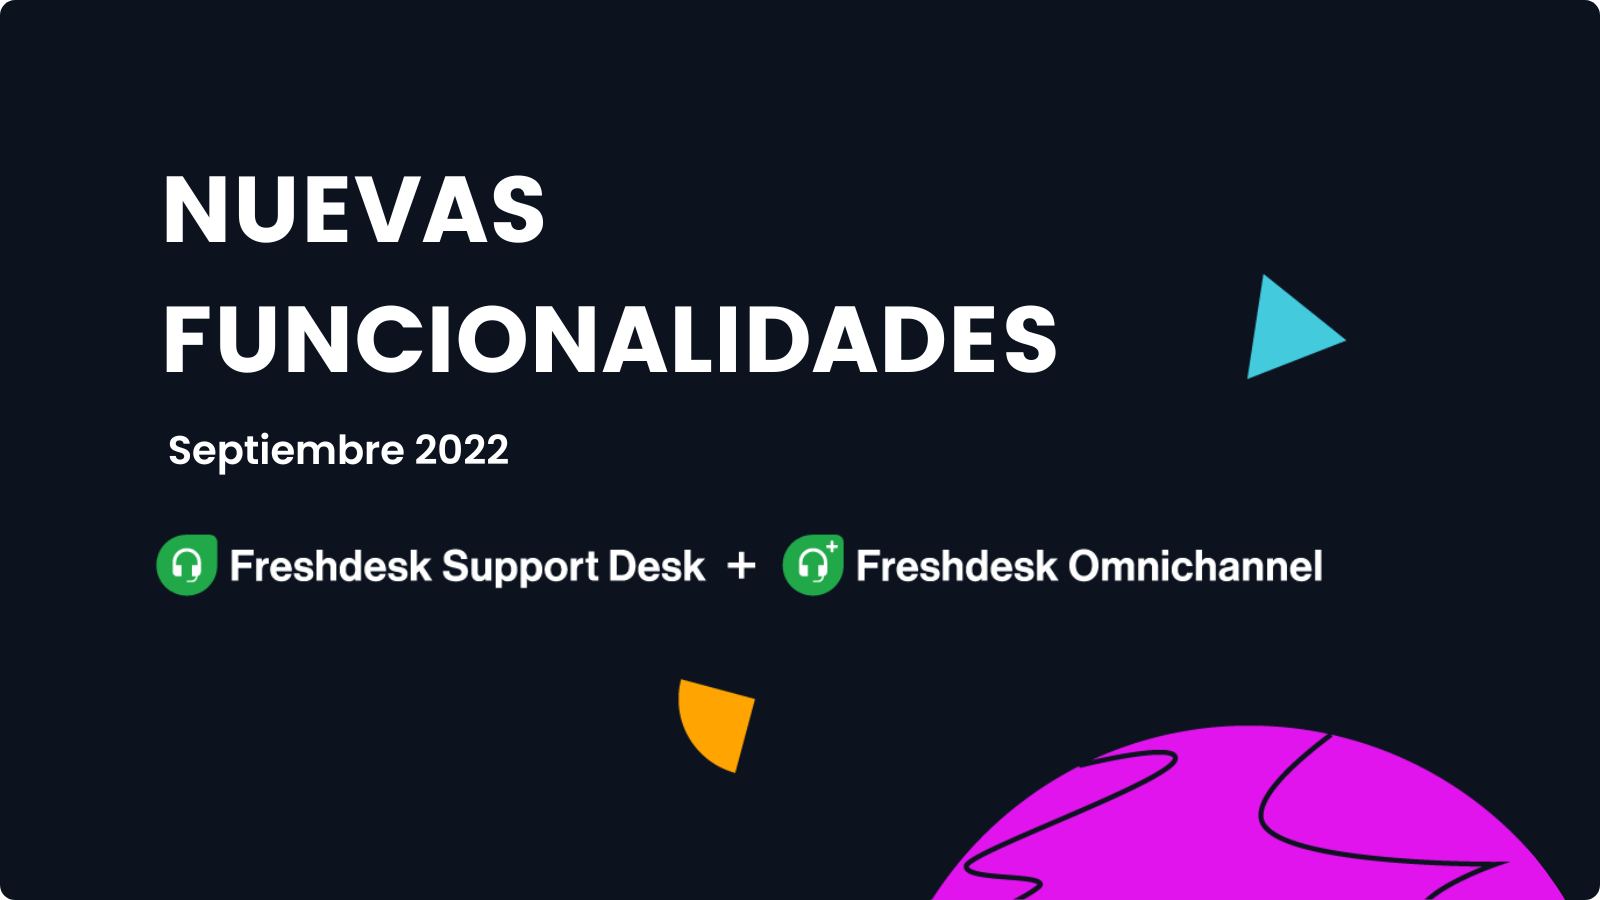 Nuevas funcionalidades en Freshdesk - Septiembre 2022